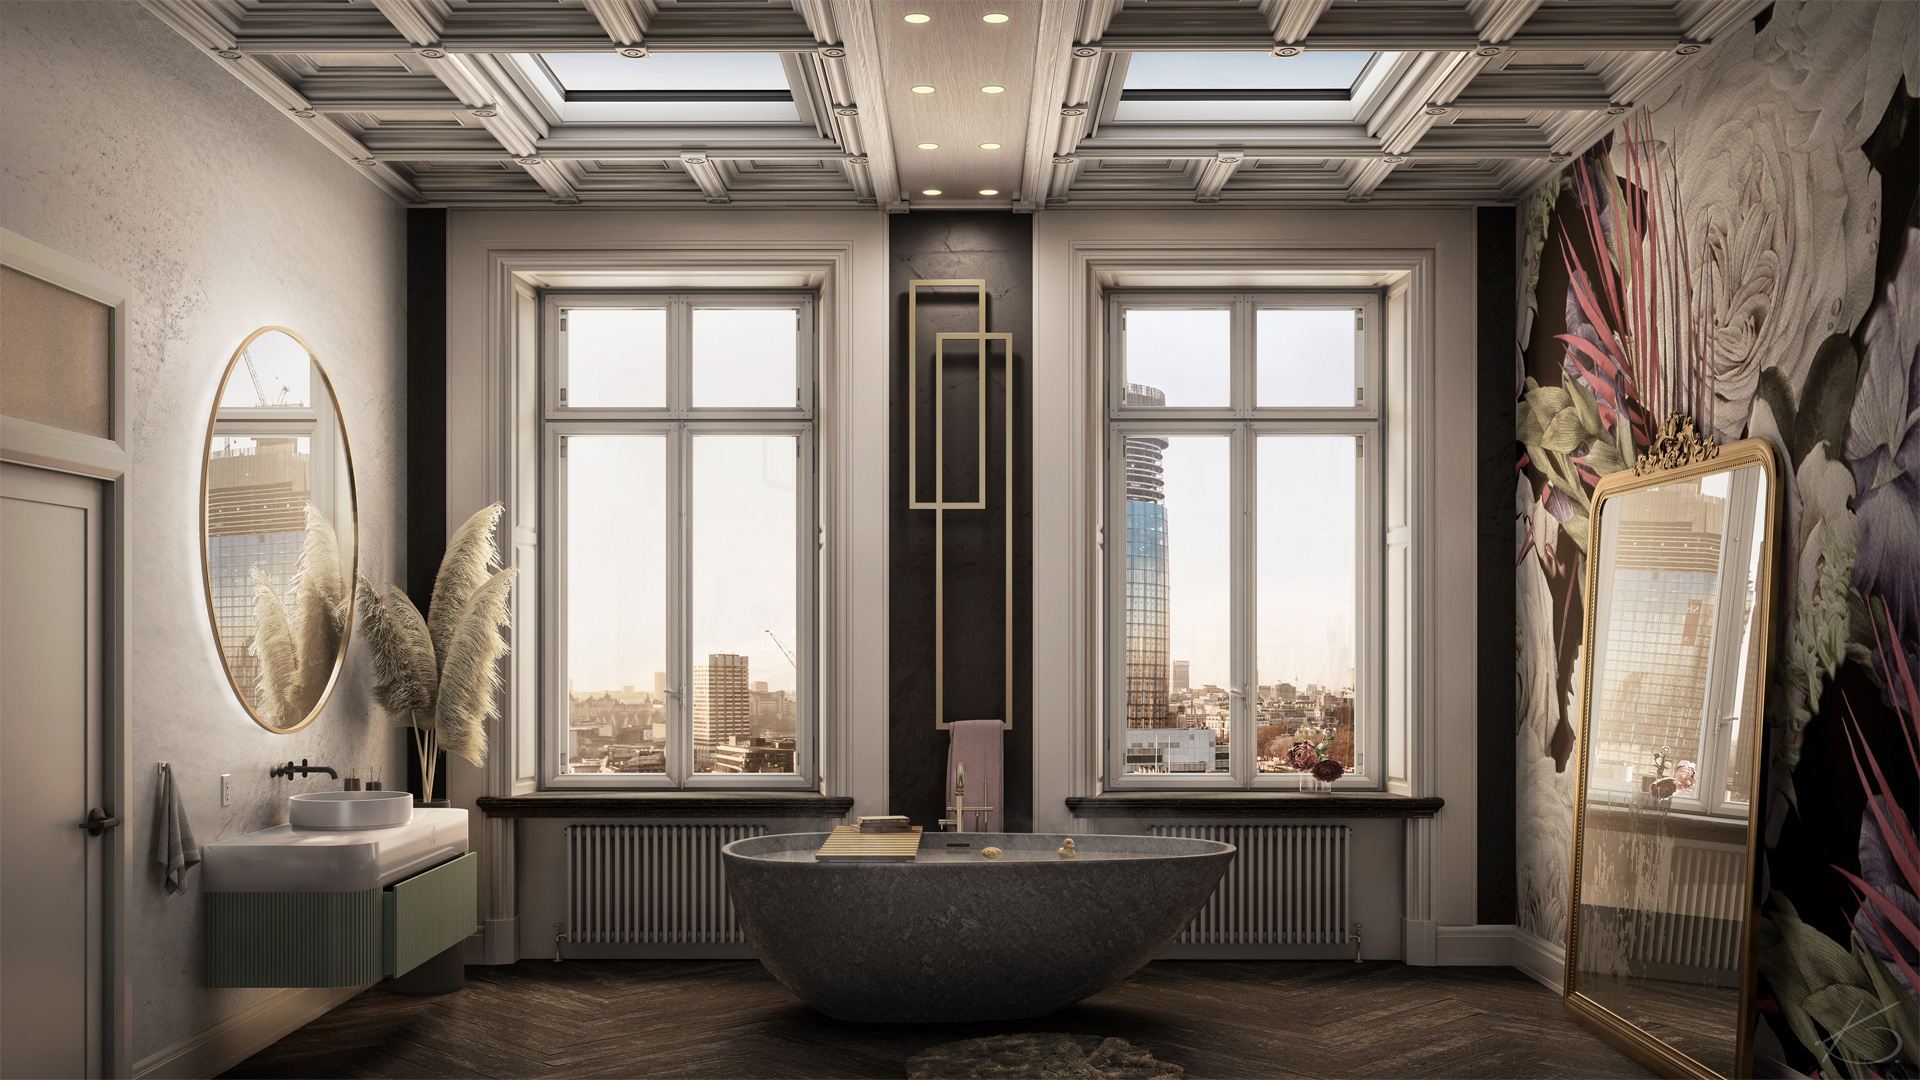 Rénovation en home stagin virtuel d'une salle de bain 3d avec vue d'ensemble